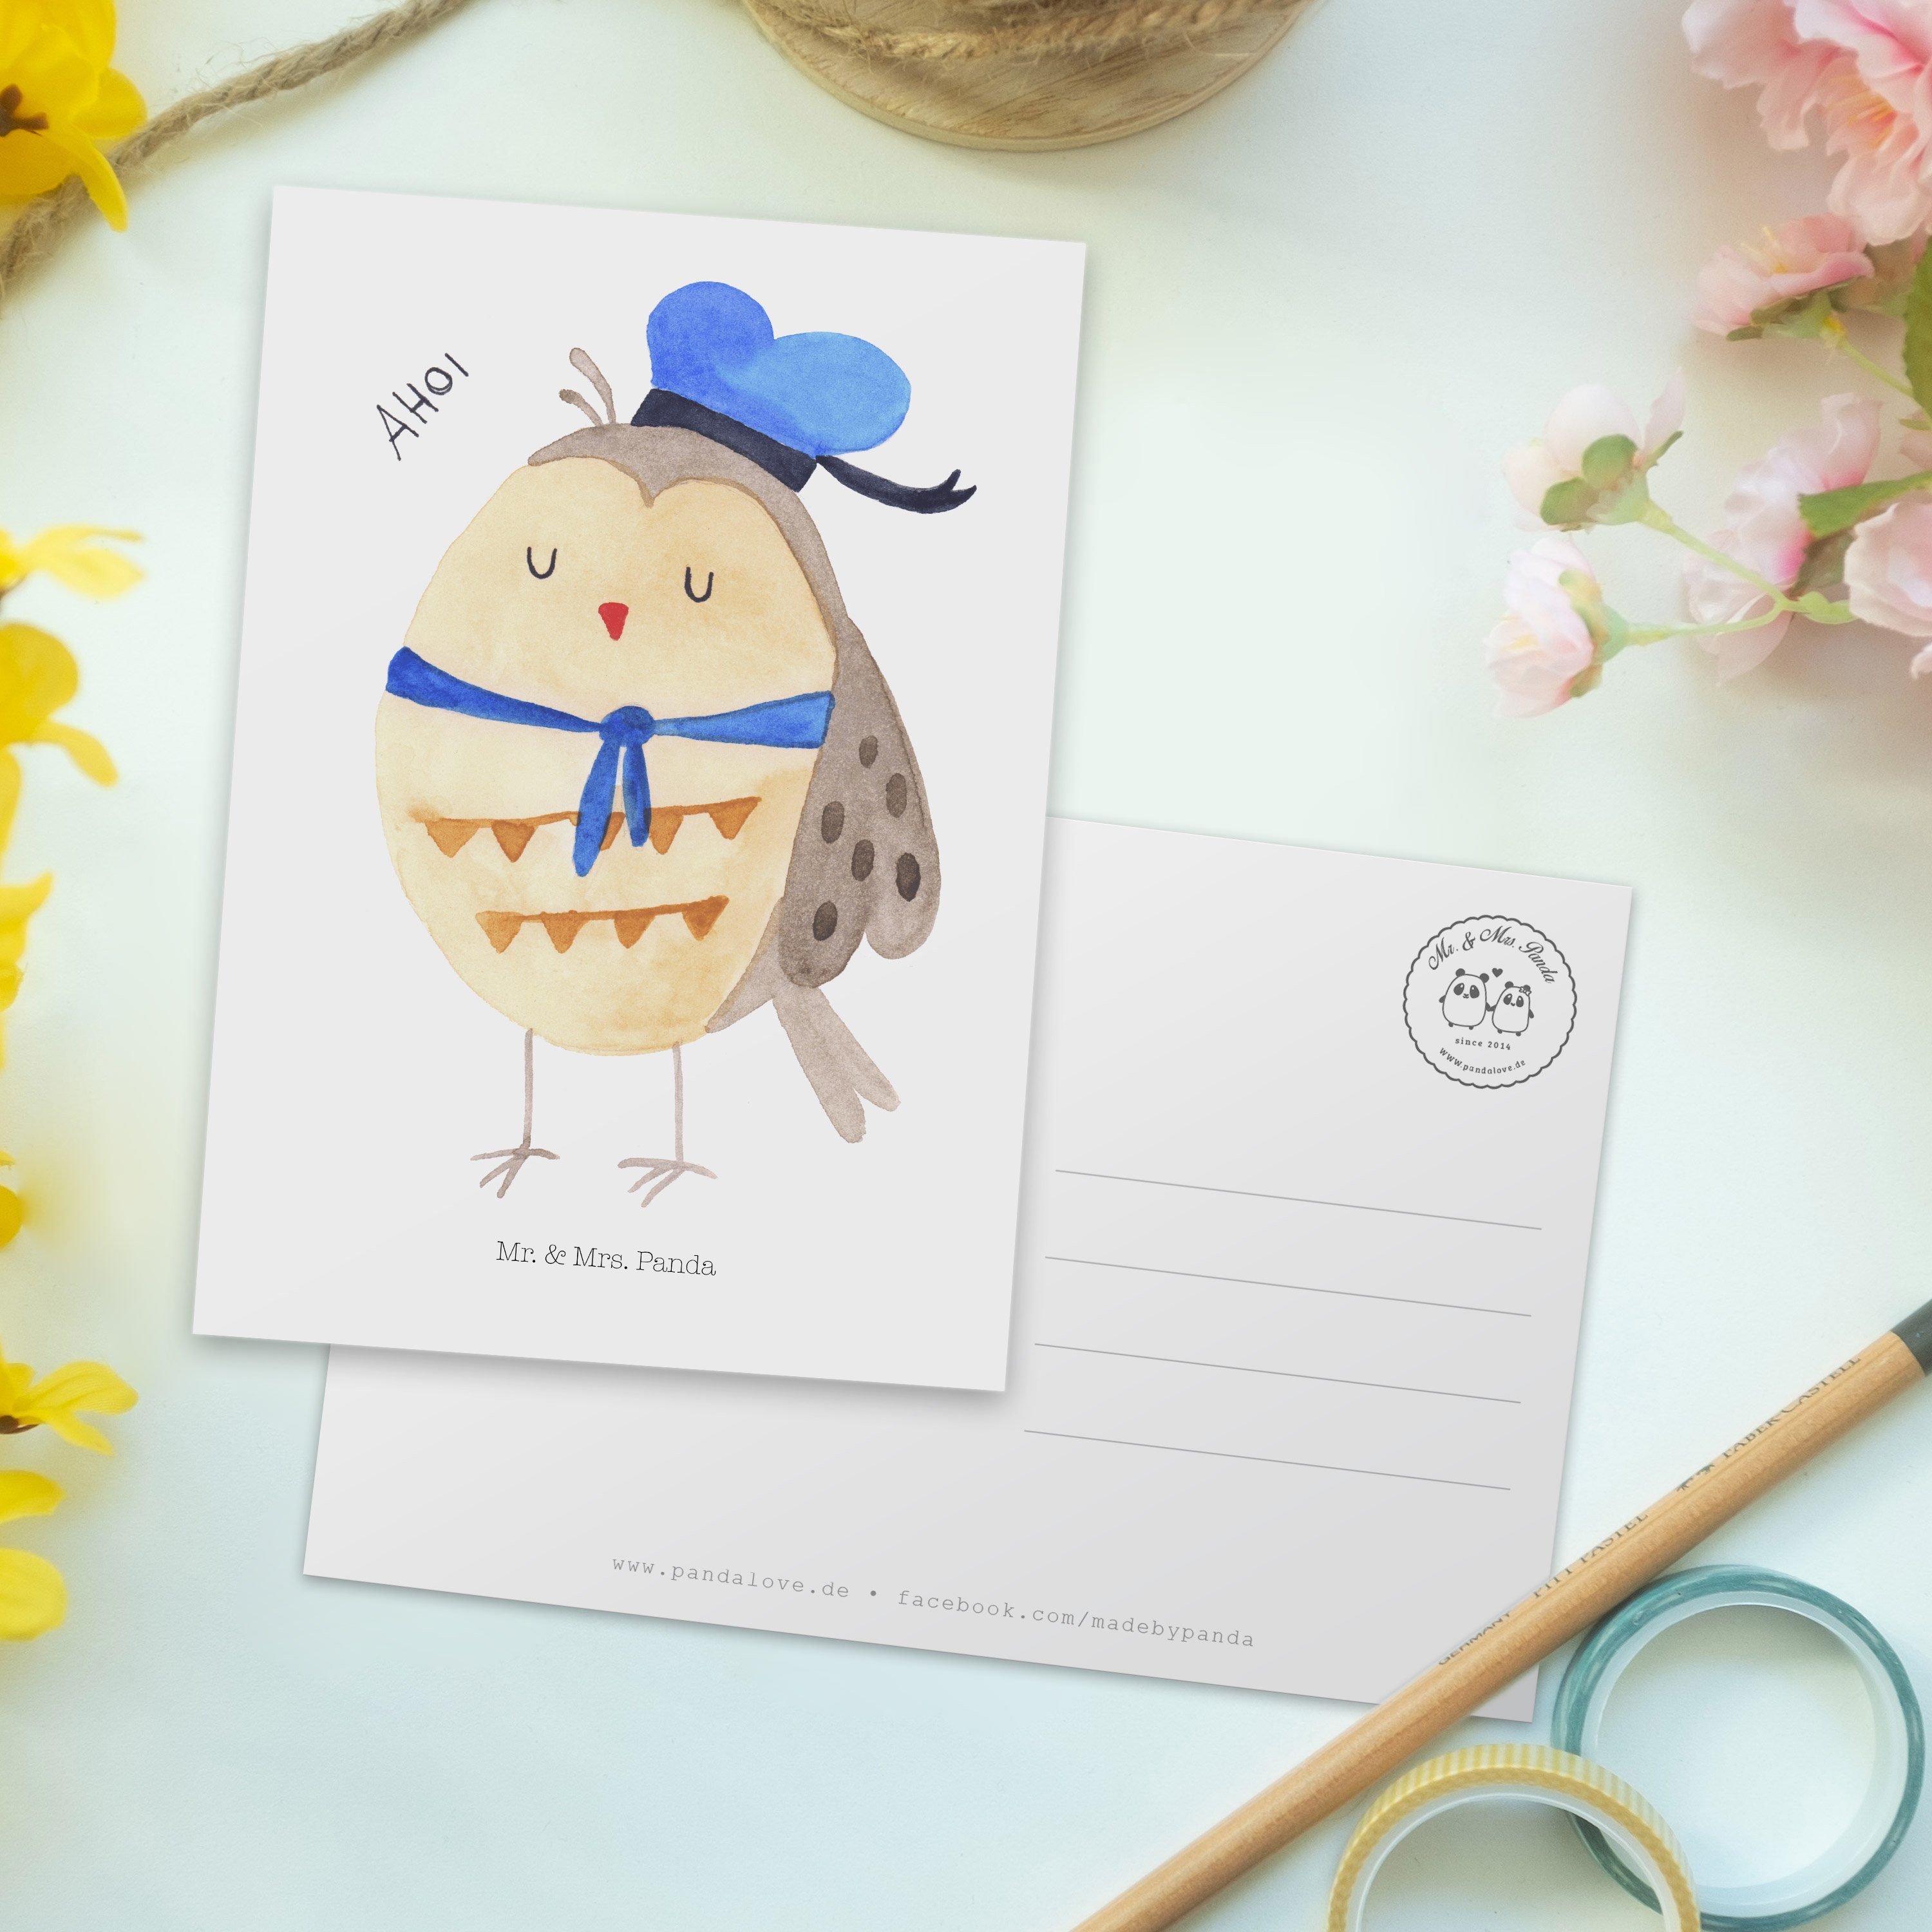 Panda lustig, Einladung, Mr. Geschenk, Ehe, & Mrs. Weiß Eule Se - Postkarte Matrosen - Wortspiel